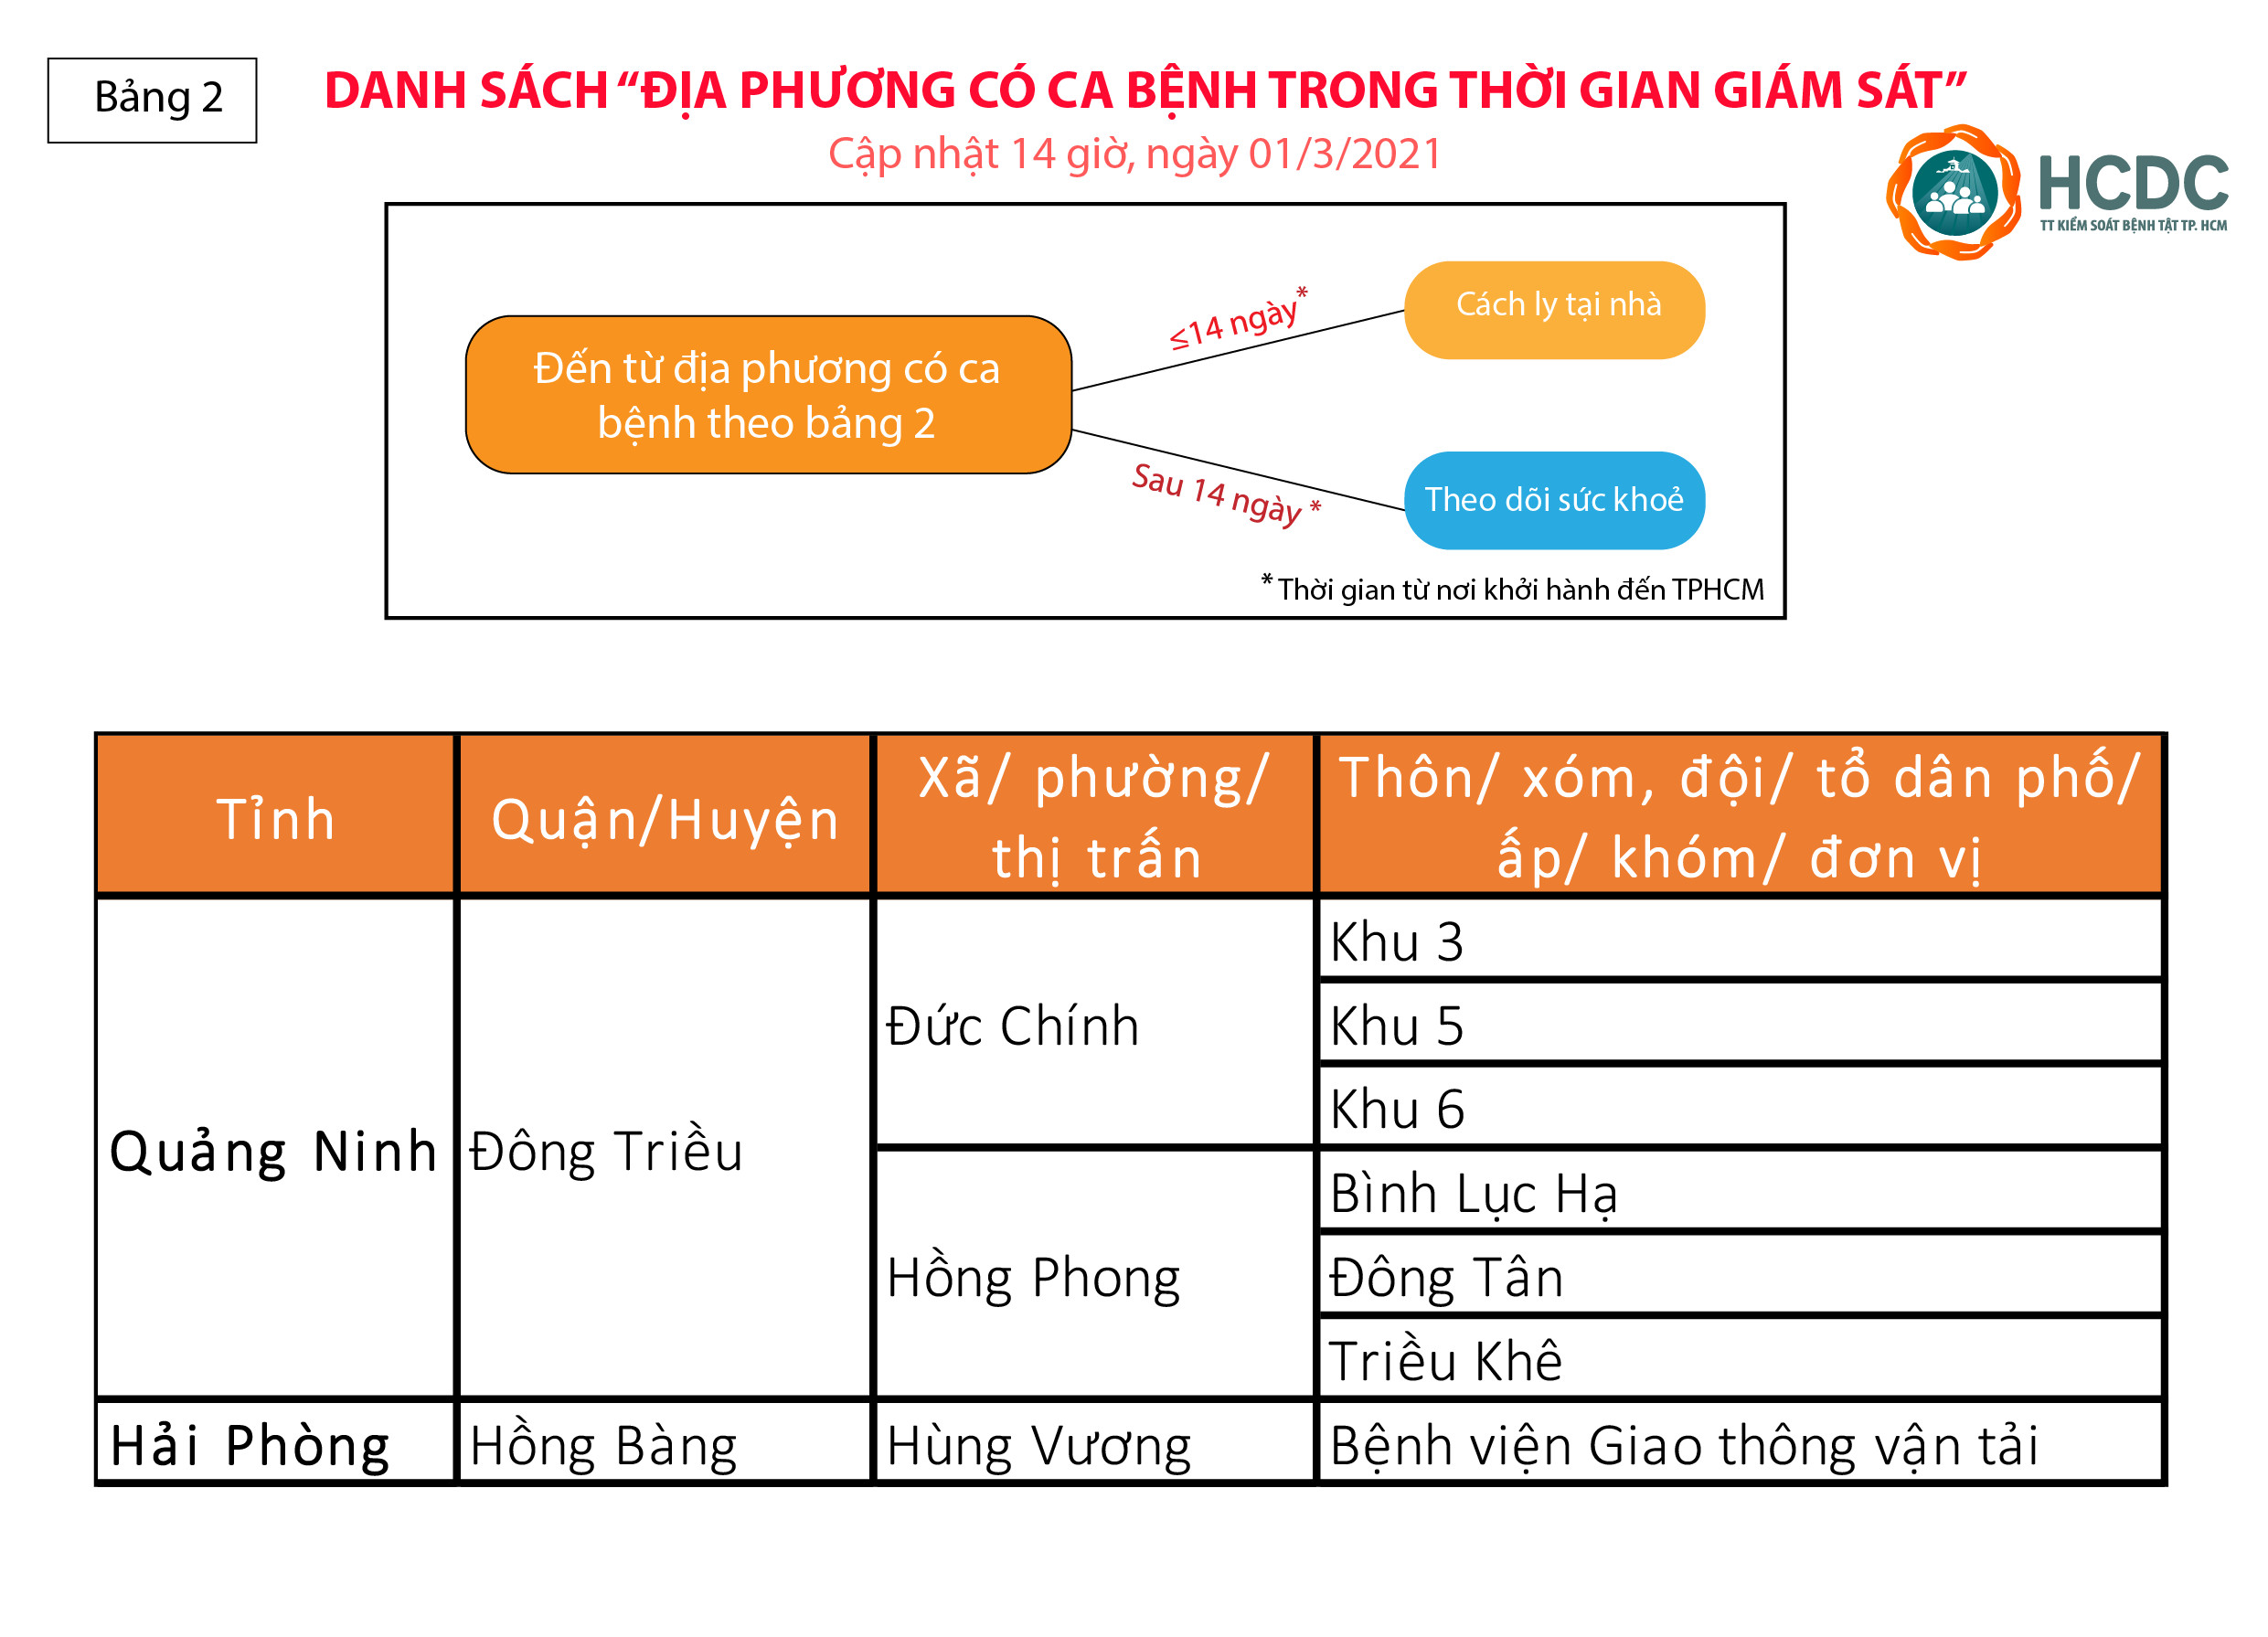 Người từ Hà Nội, Gia Lai vào TPHCM không phải cách ly tại nhà